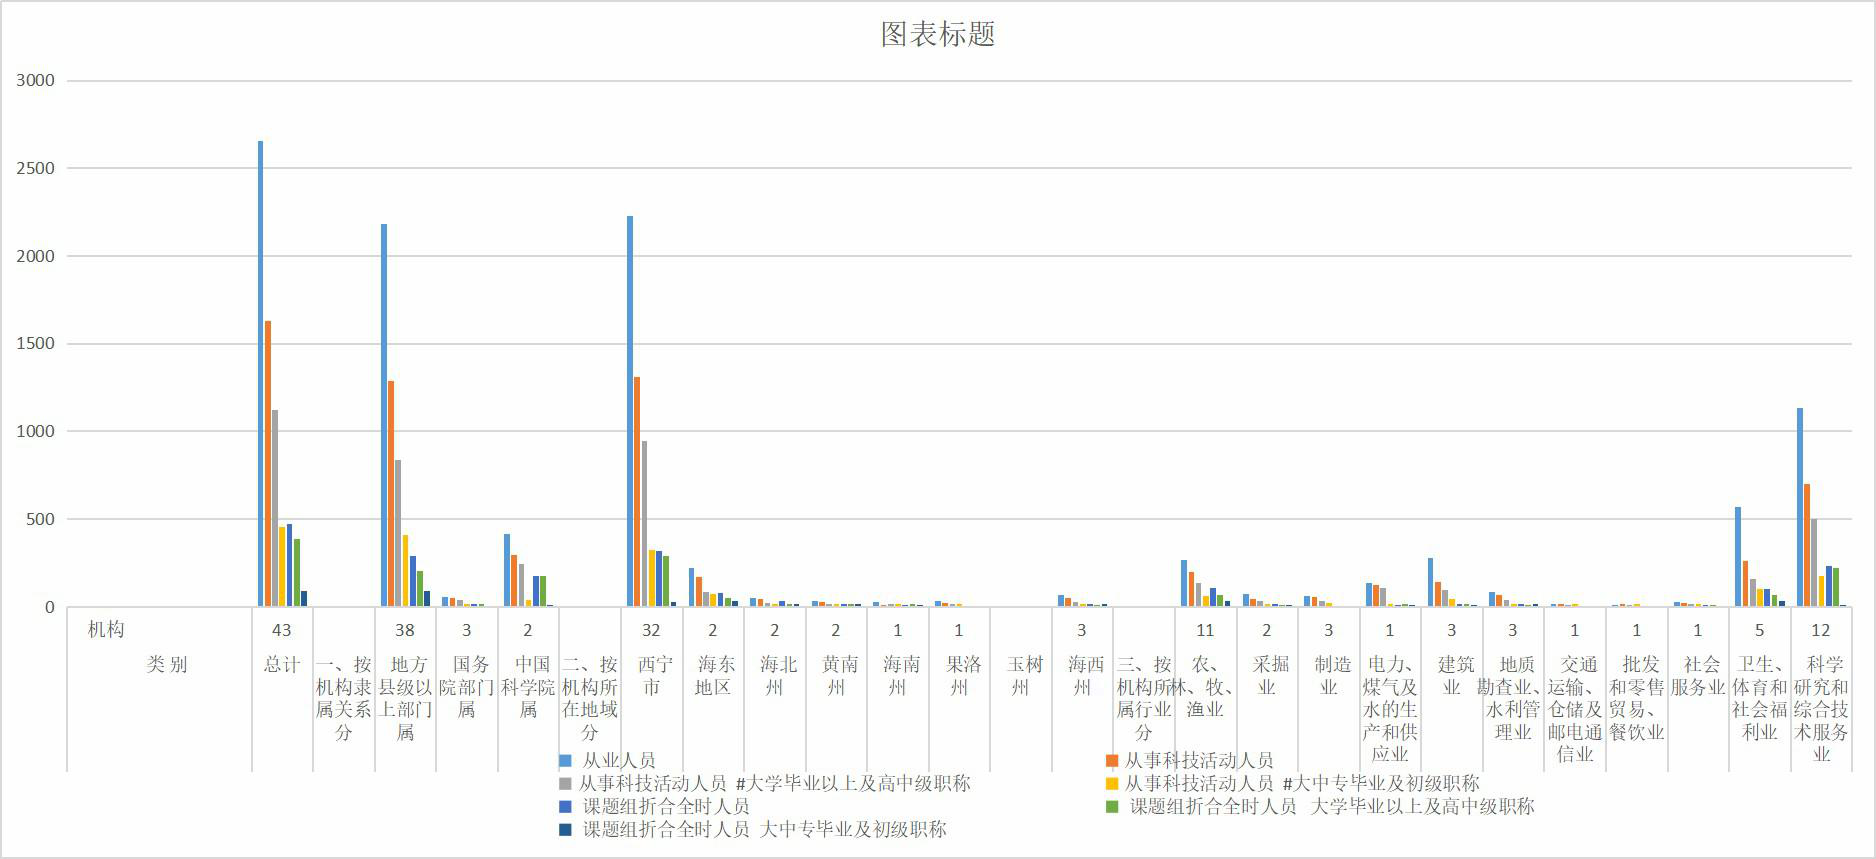 青海省全省自然科学研究机构、人员、经费情况（1998-2008）